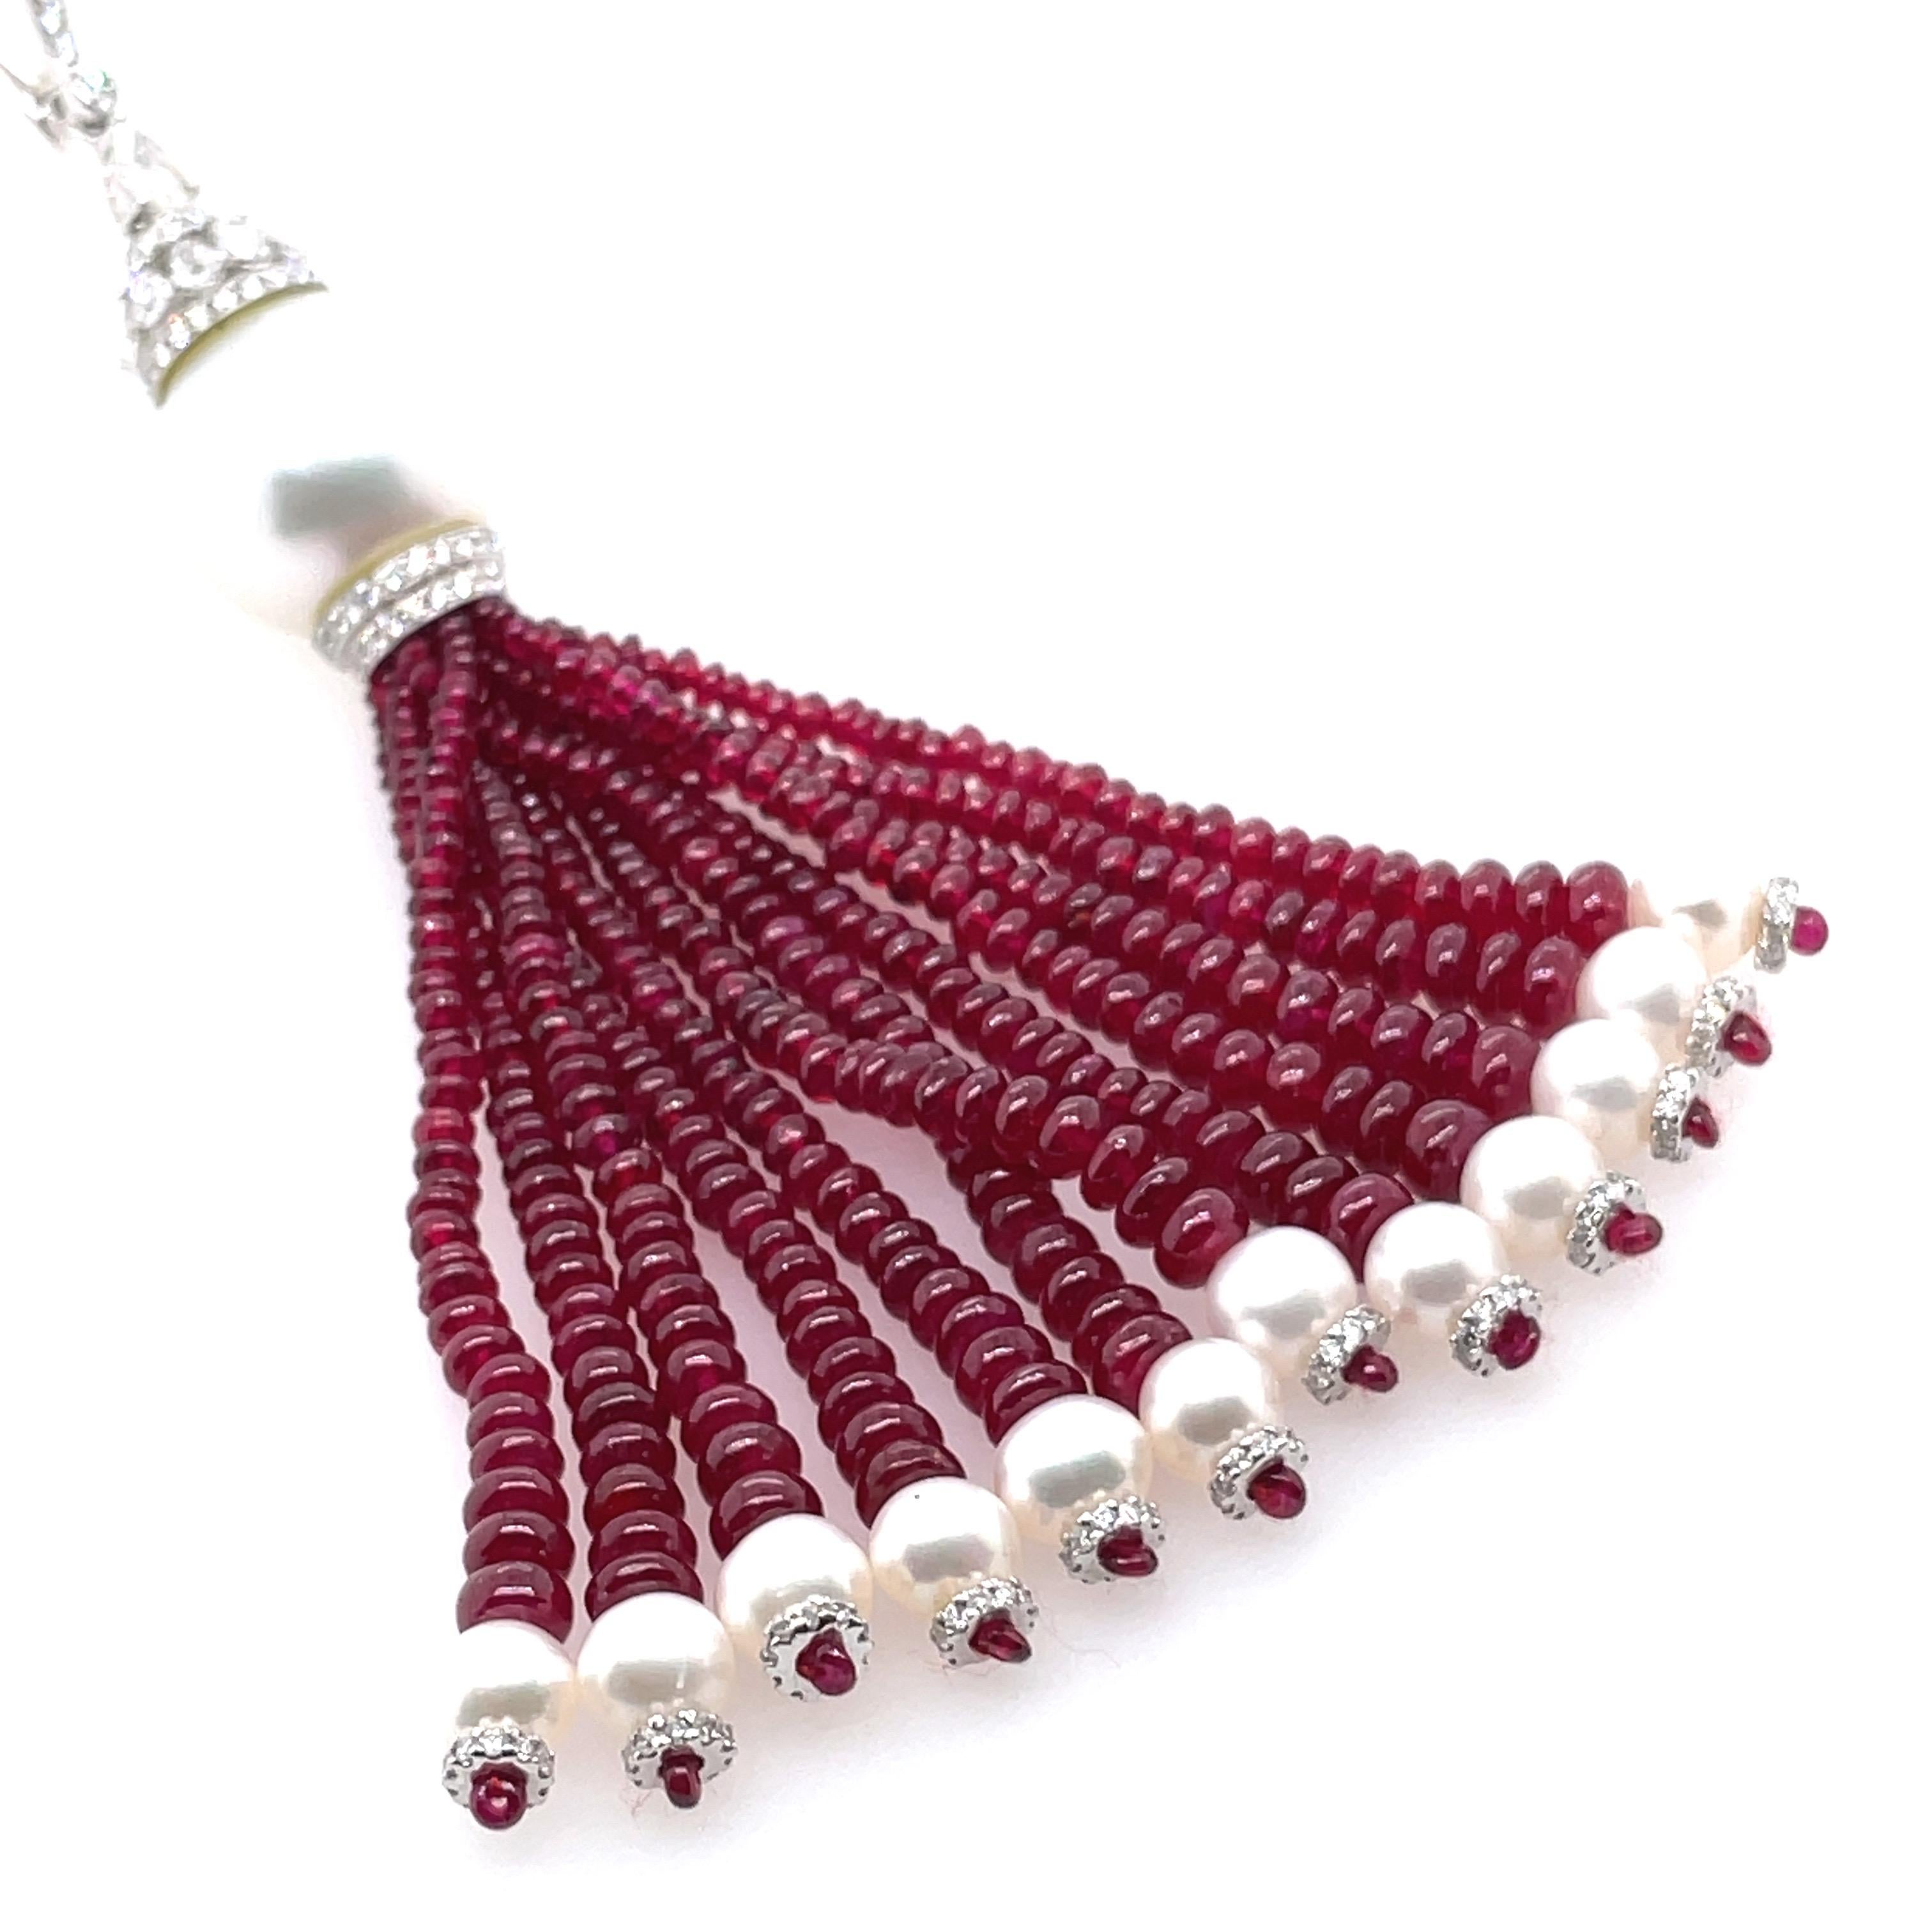 Mit Rubinperlen von insgesamt 62,10 Karat und atemberaubenden Perlen von 8,55 Karat strahlt er auf Schritt und Tritt Opulenz aus. 

Rubine, wissenschaftlich als Korund bezeichnet, bestehen hauptsächlich aus Aluminiumoxid und erhalten ihre leuchtend